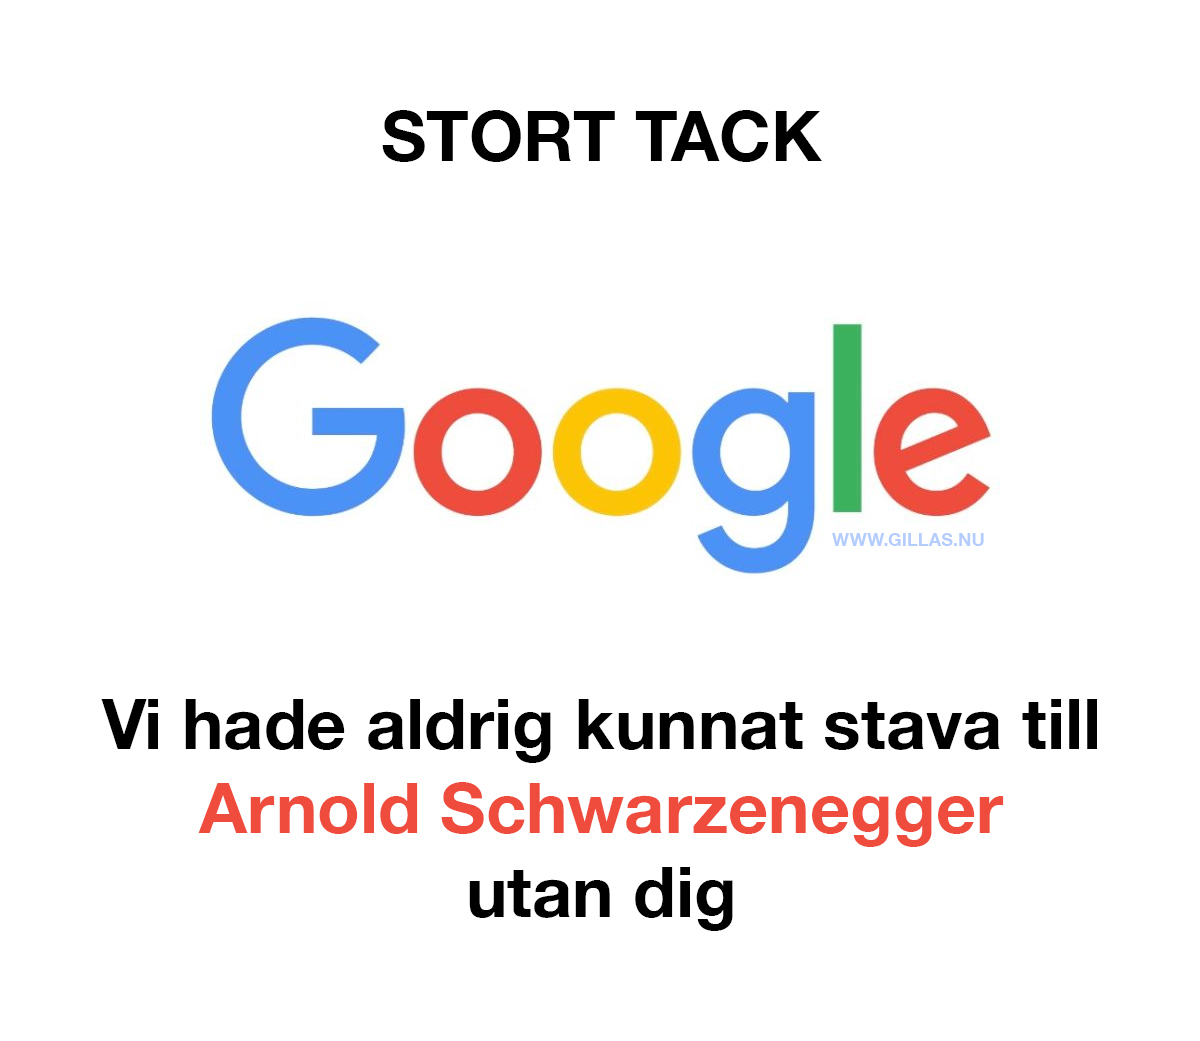 Roligt citat om Google - STORT TACK GOOGLE, vi hade aldrig kunnat stava till Arnold Schwarzenegger utan dig